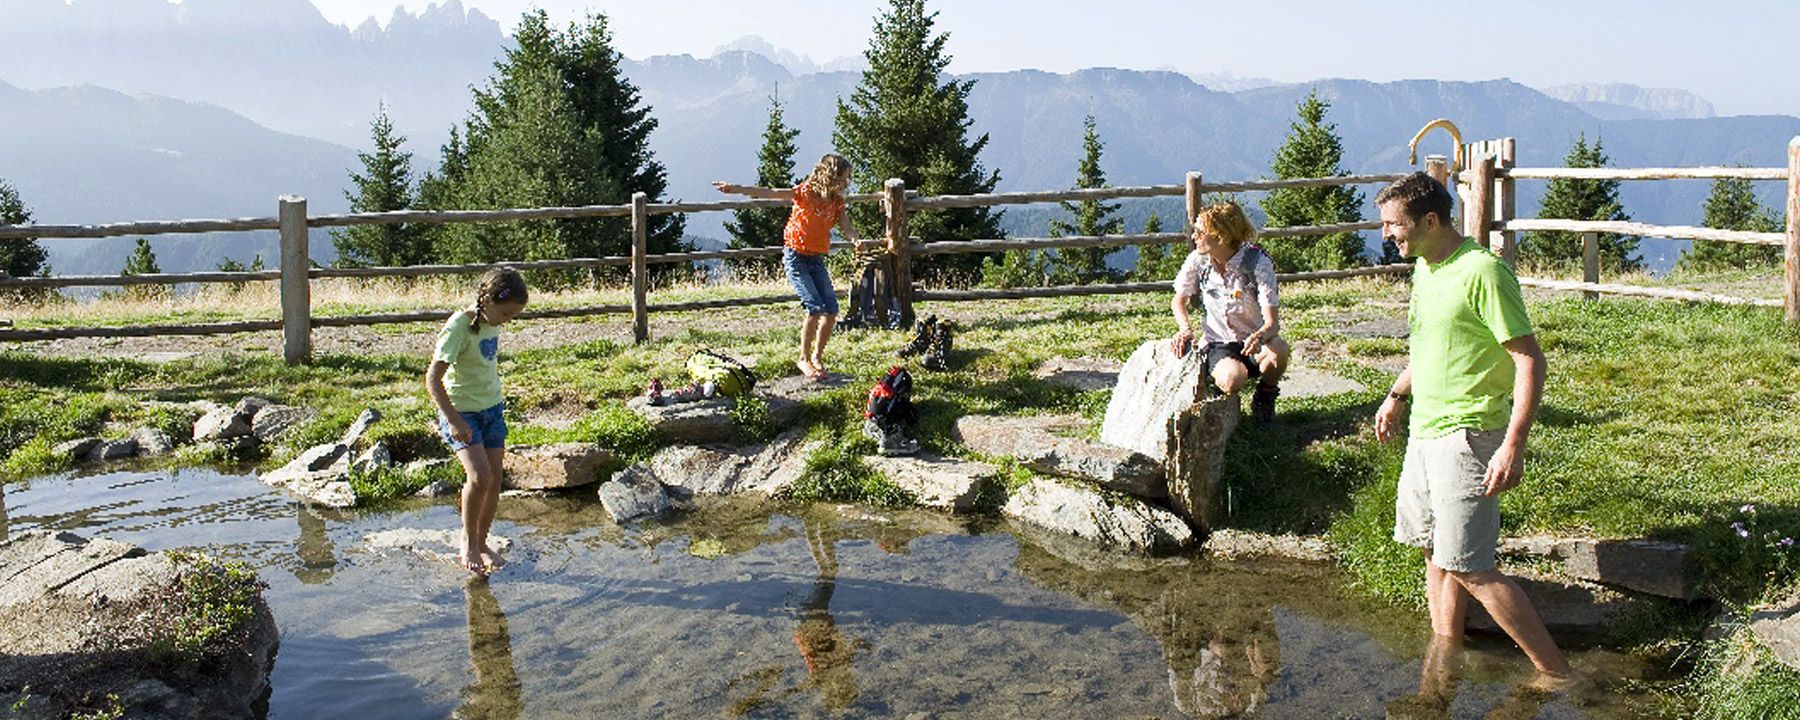 Wandern auf der Villanderer Alm im Sommer in Südtirol